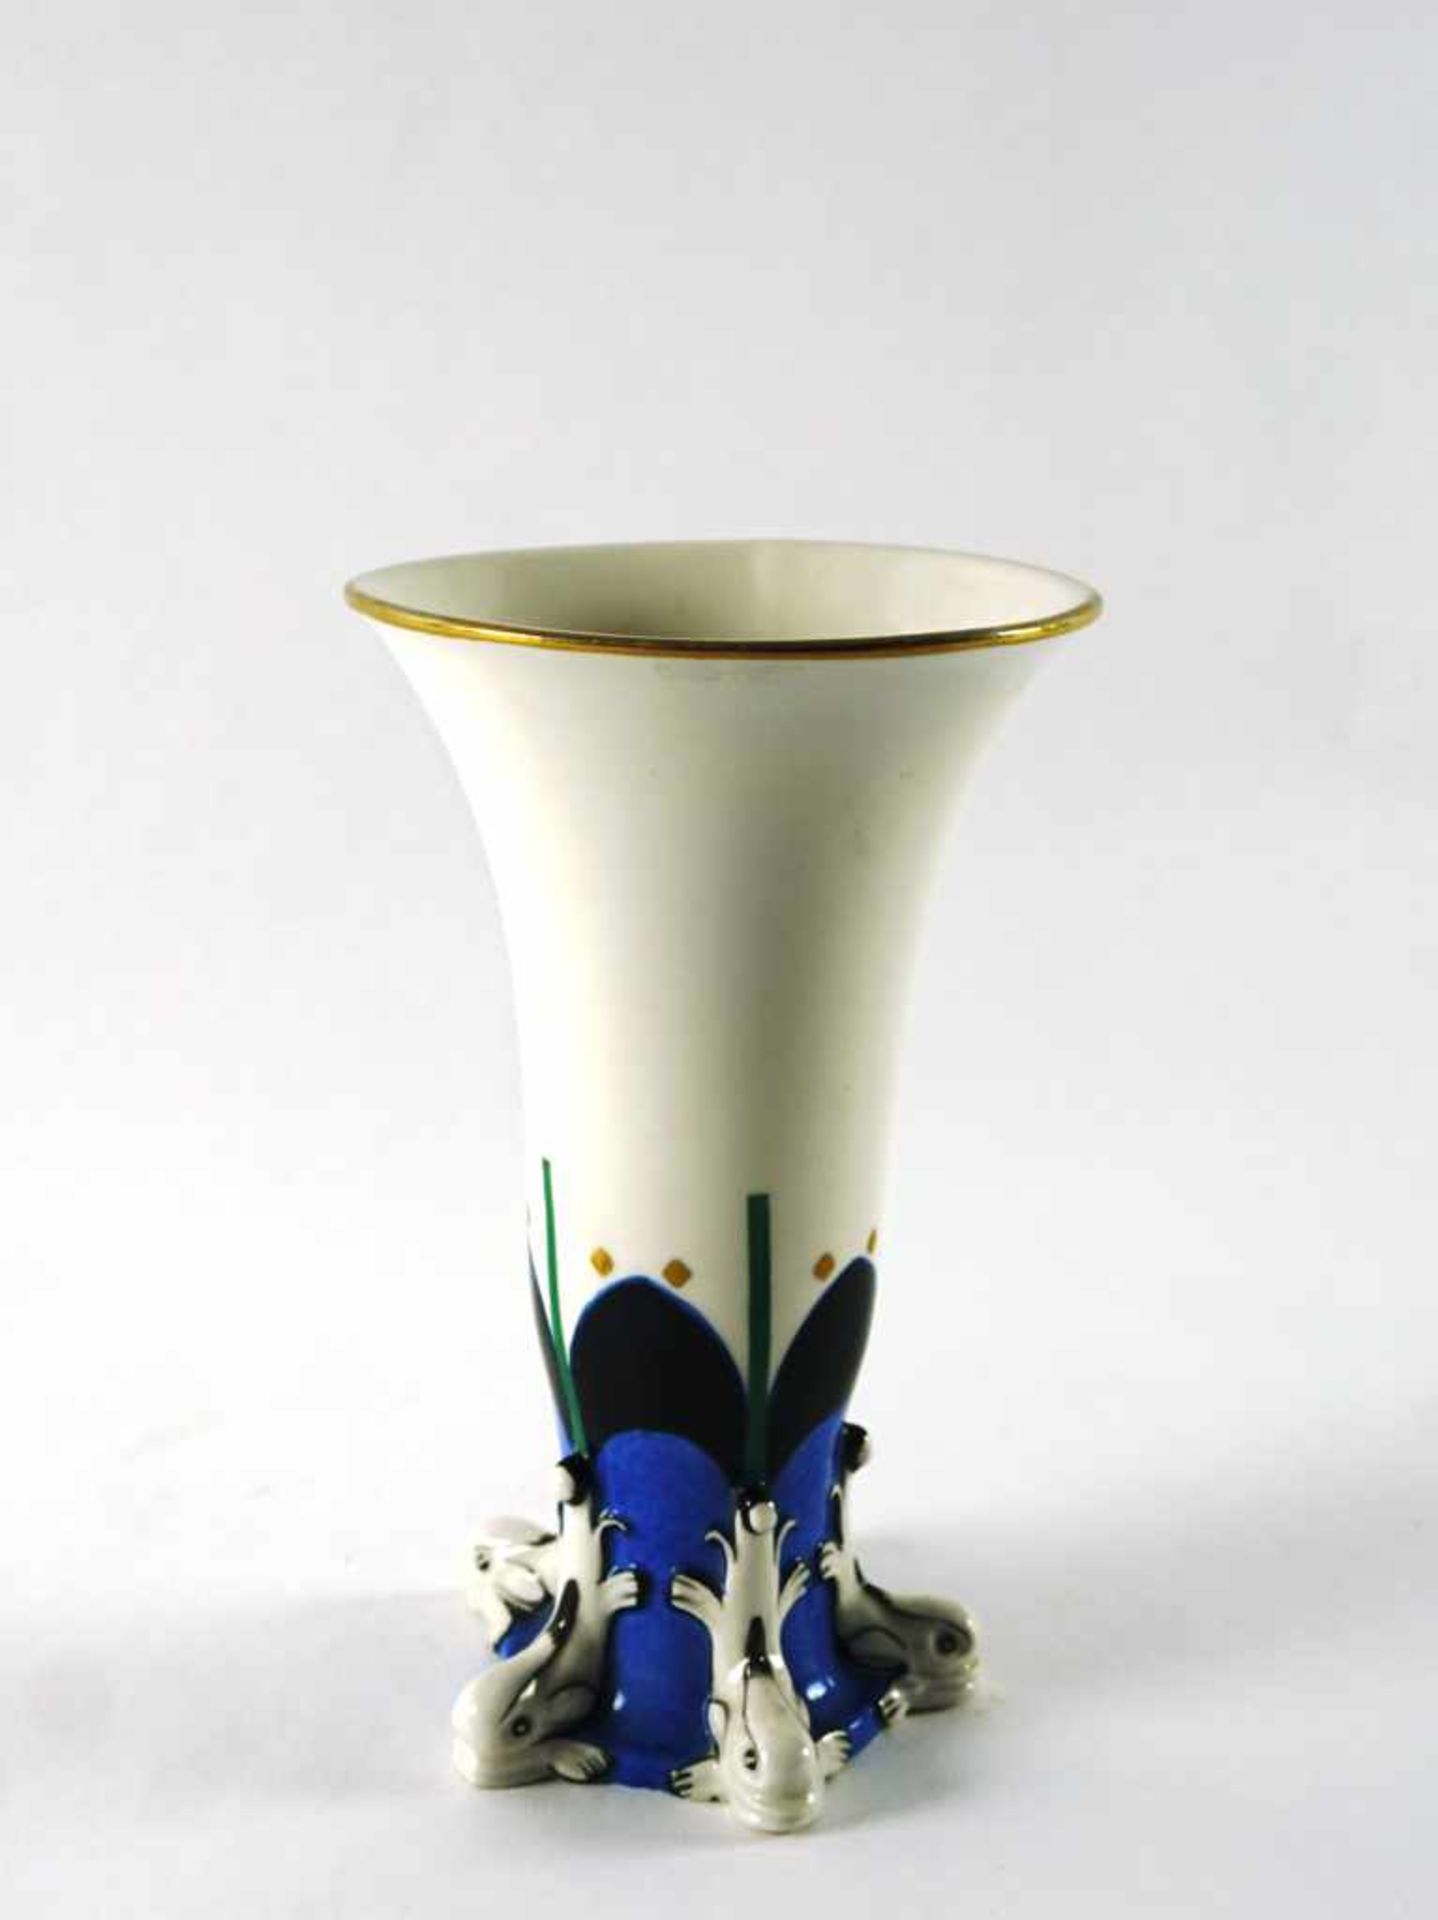 Vase mit Delphinen. Porzellan mit polychromer und goldener Staffage. Bodenmarke Porzellanfabrik Karl